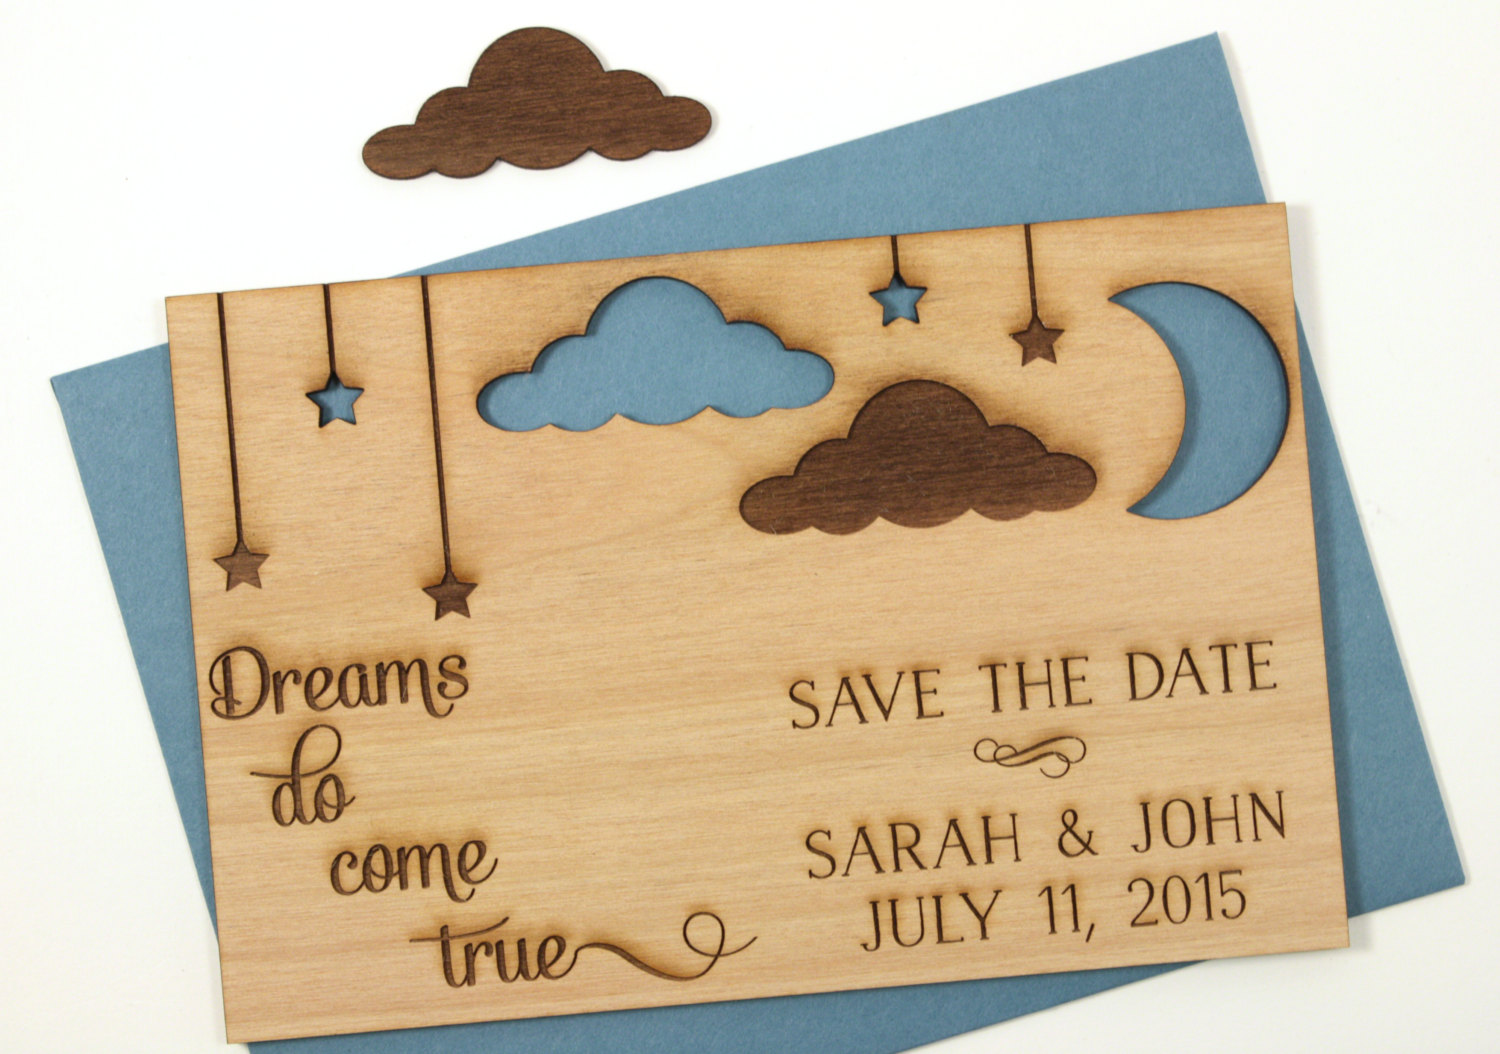 Dreams do come true - wooden Save the Date Invitation